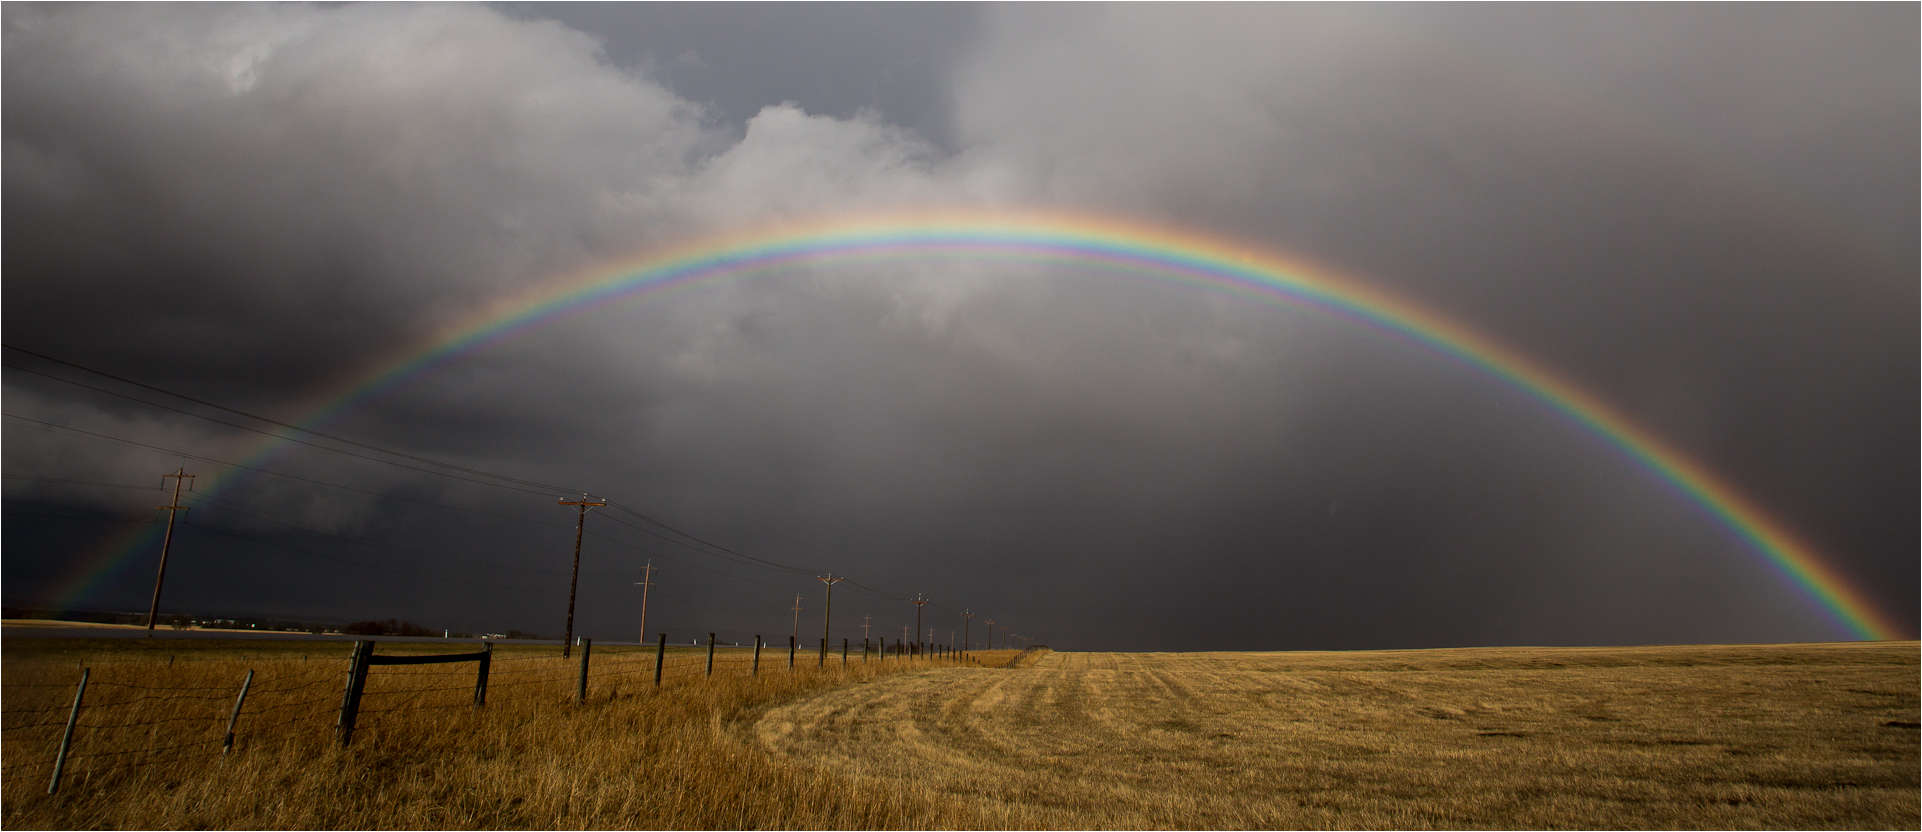 rainbow-arch-on-the-prairie-c2a9-2012-christopher-martin-4422.jpg